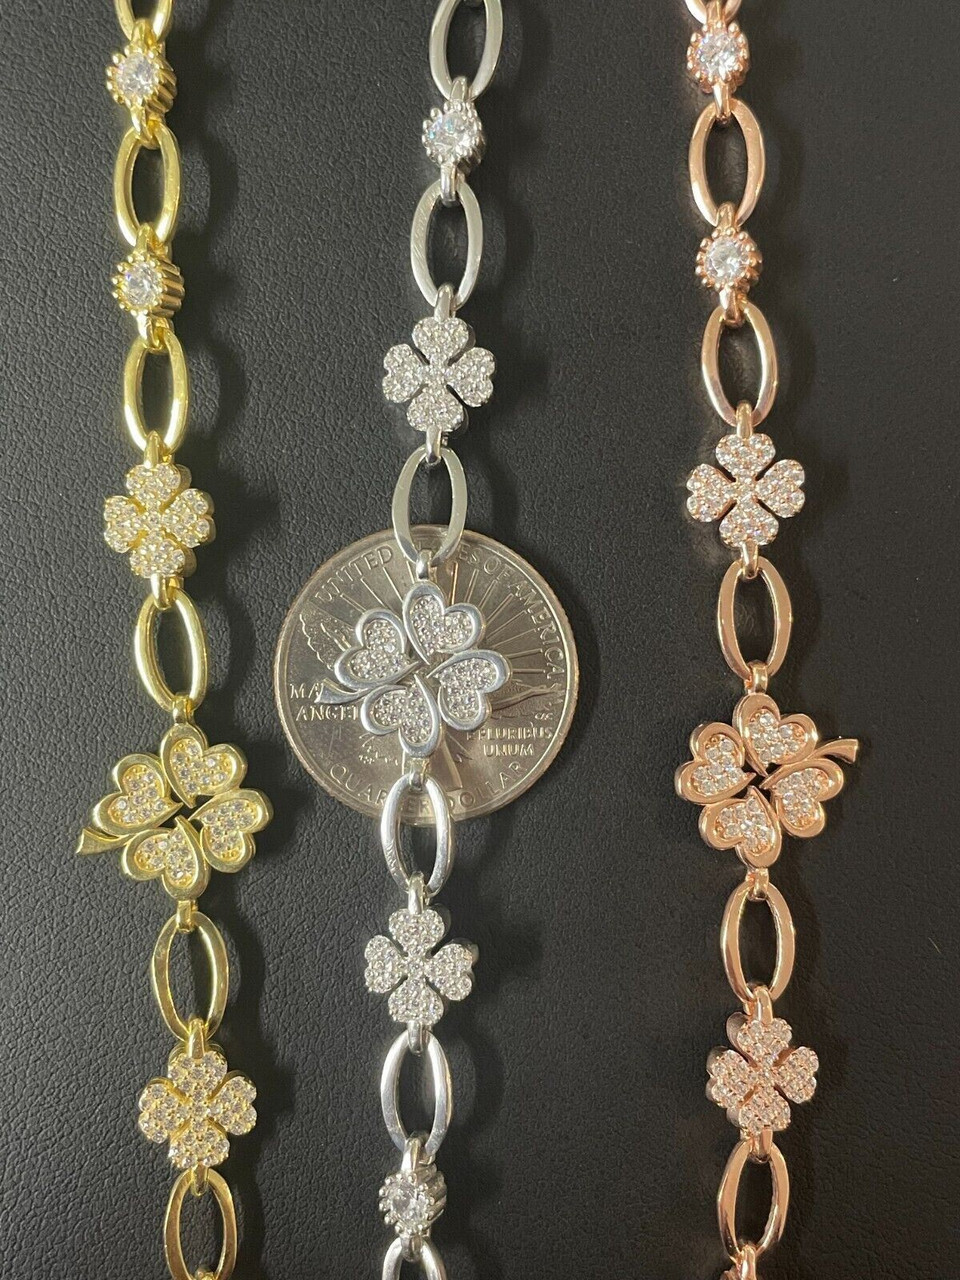 Rose Gold Crystal Leaf Bracelet